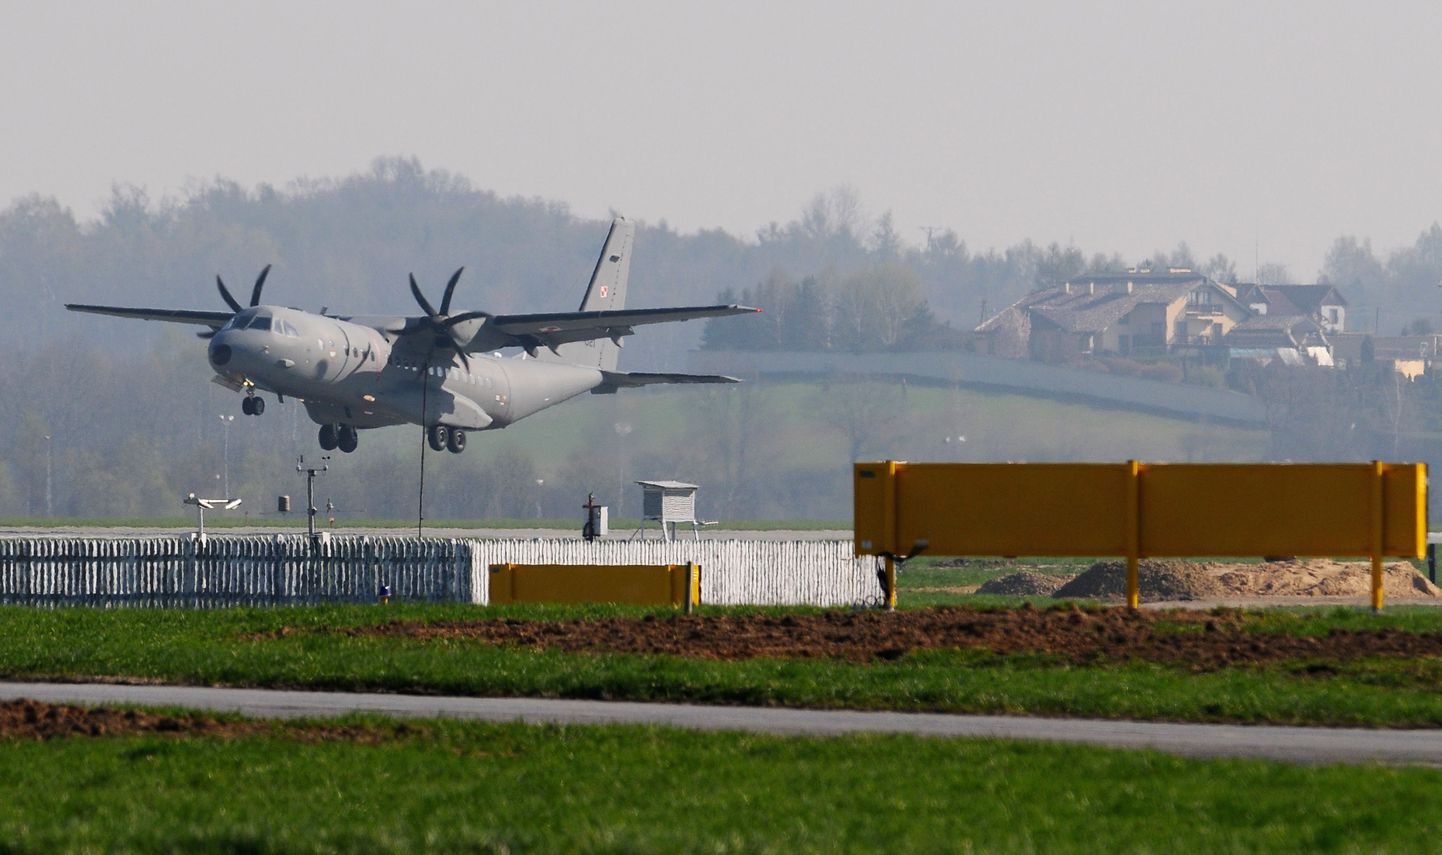 Krakowi lennuväljal maandus täna sõjaväelennuk, mille pardal Poola president Lech Kaczynski ja tema abikaasa Maria kirstud.